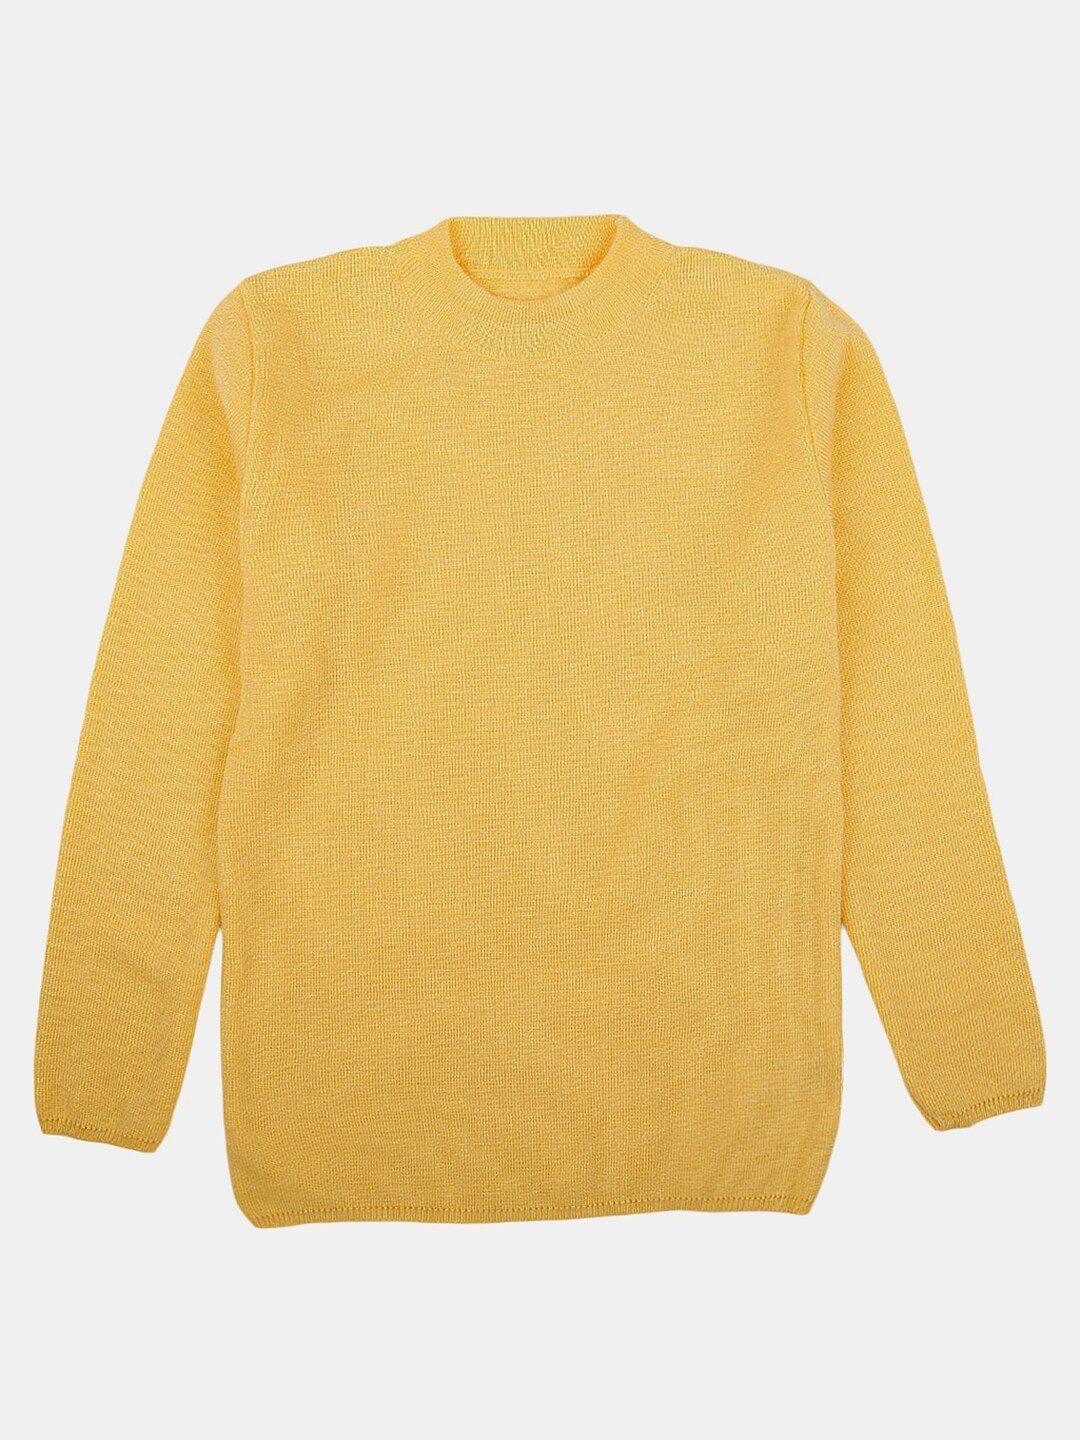 v-mart-boys-fleece-pullover-sweatshirt